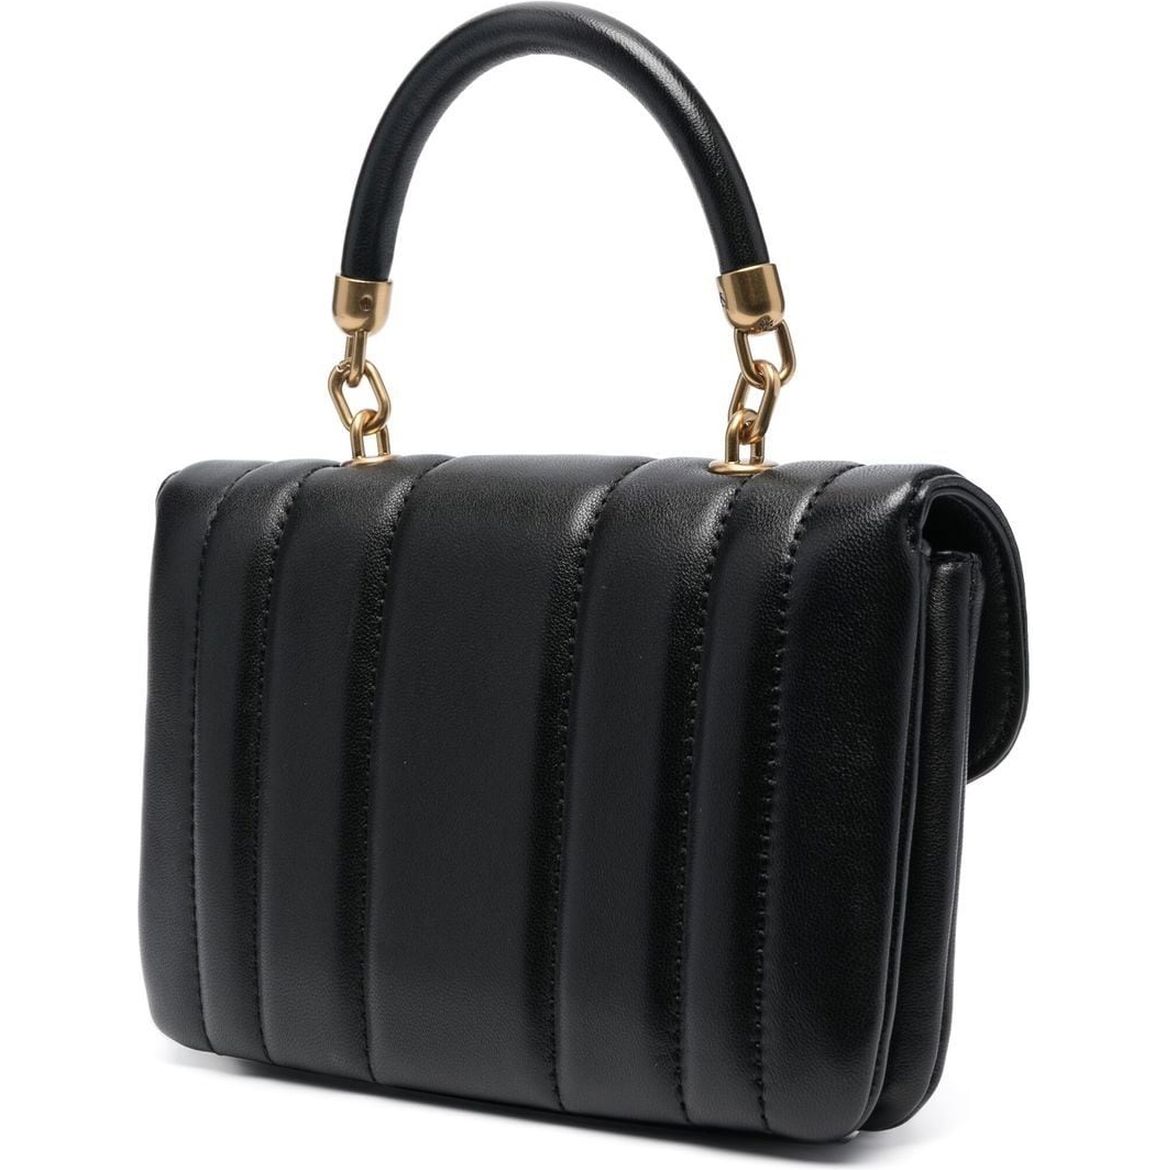 TORY BURCH moteriška juoda rankinė per petį Kira mini bag